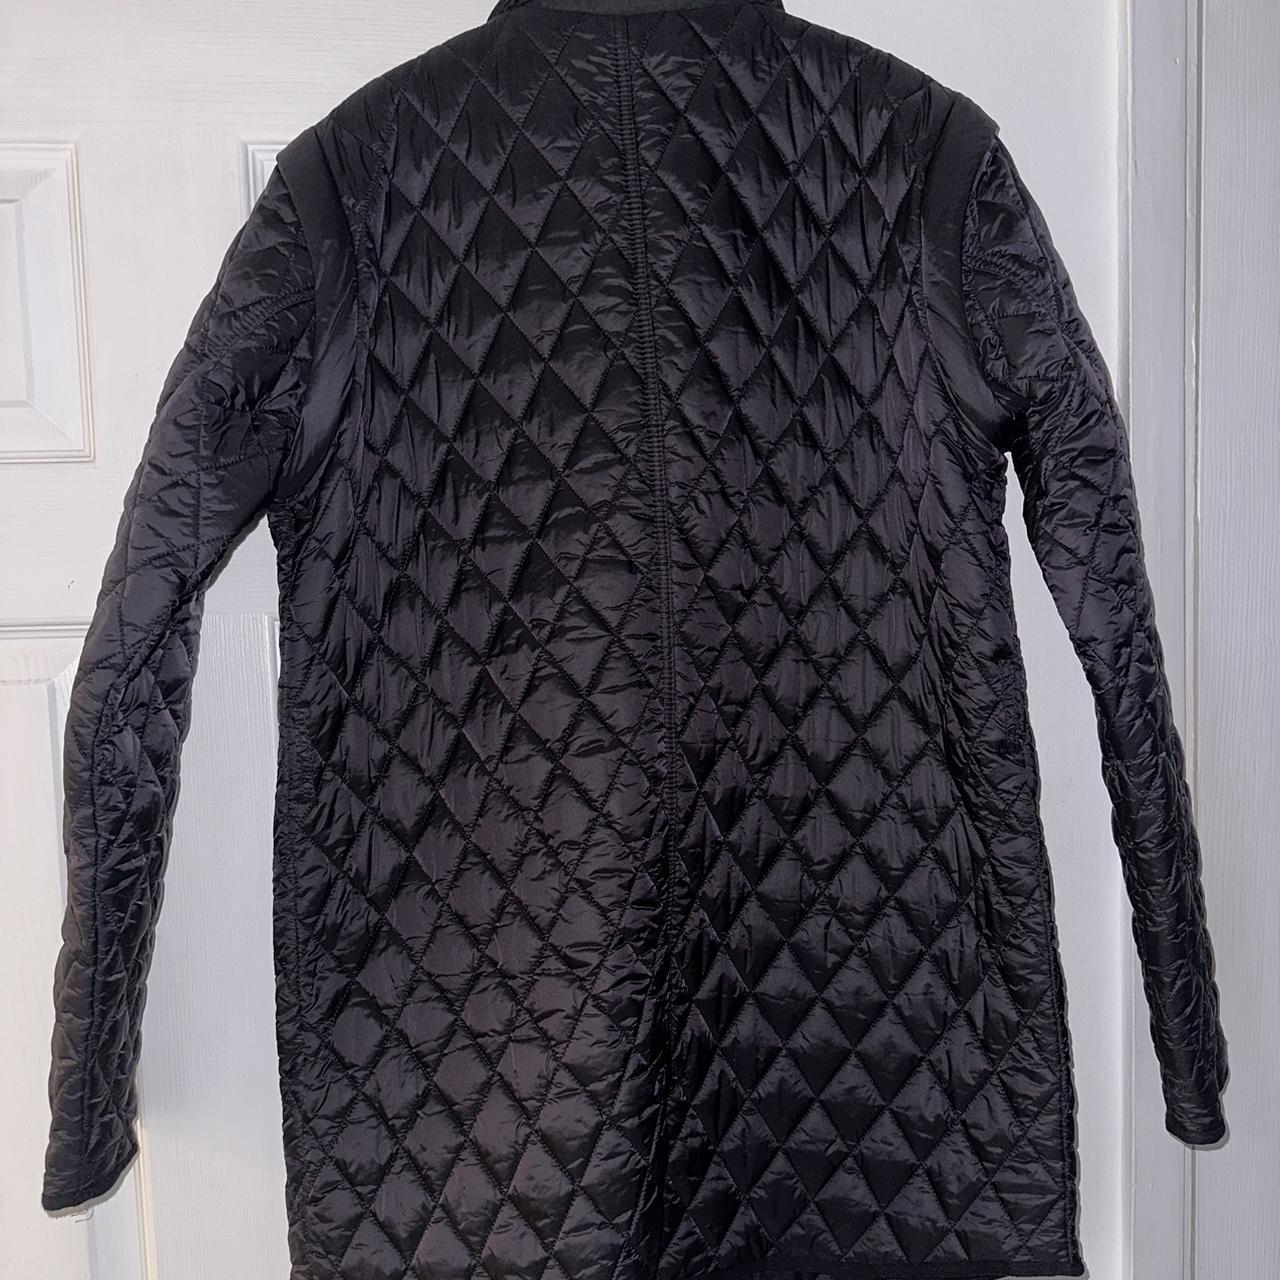 NEXT black gillet quilted jacket Removable... - Depop